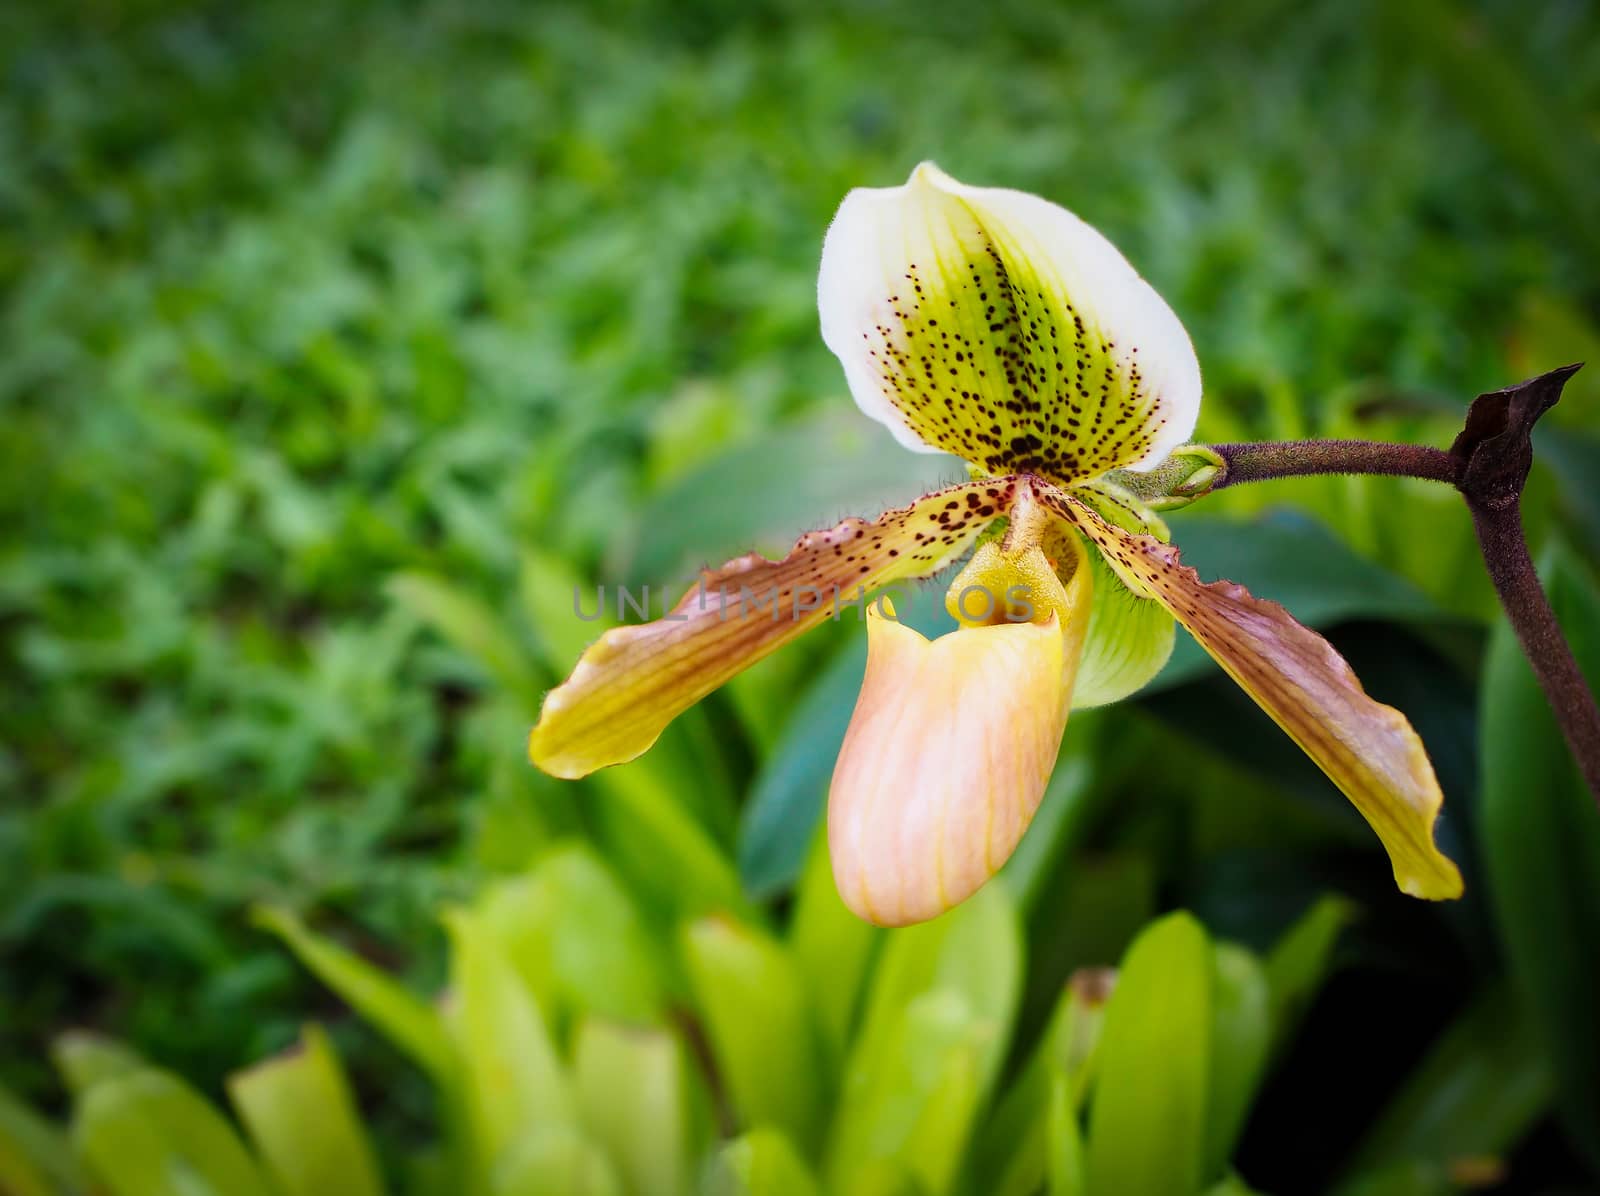 Rare Paphiopedilum orchid flower found in Thailand.